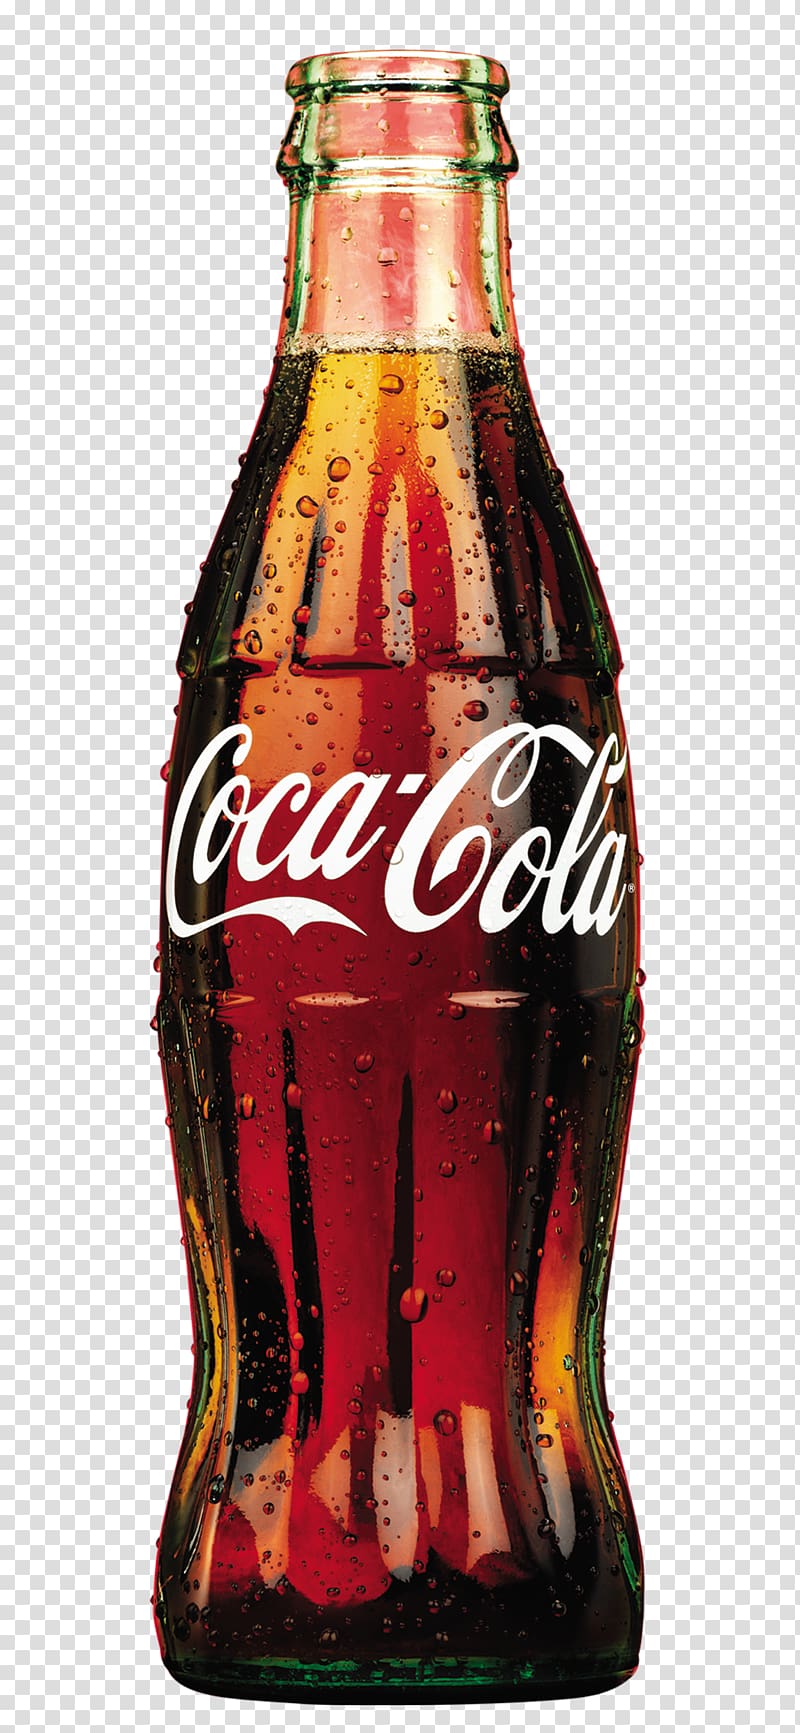 beverages beverages pattern,coca-cola beverages transparent background PNG clipart